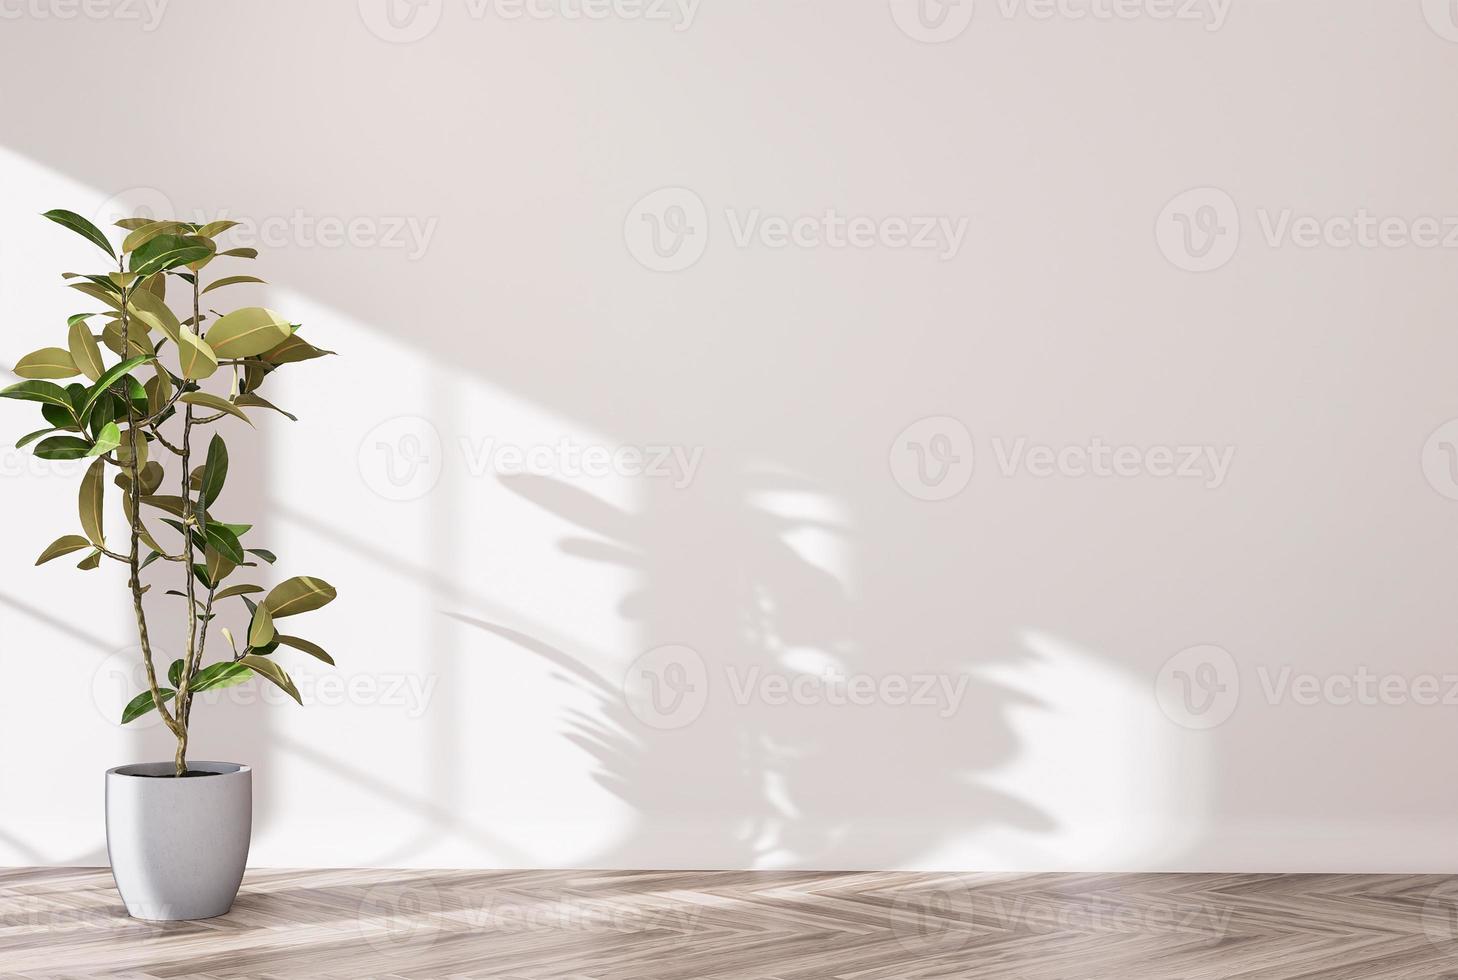 sfondo del desktop della stanza vuota bianca, sfondo della decorazione della casa delle piante foto